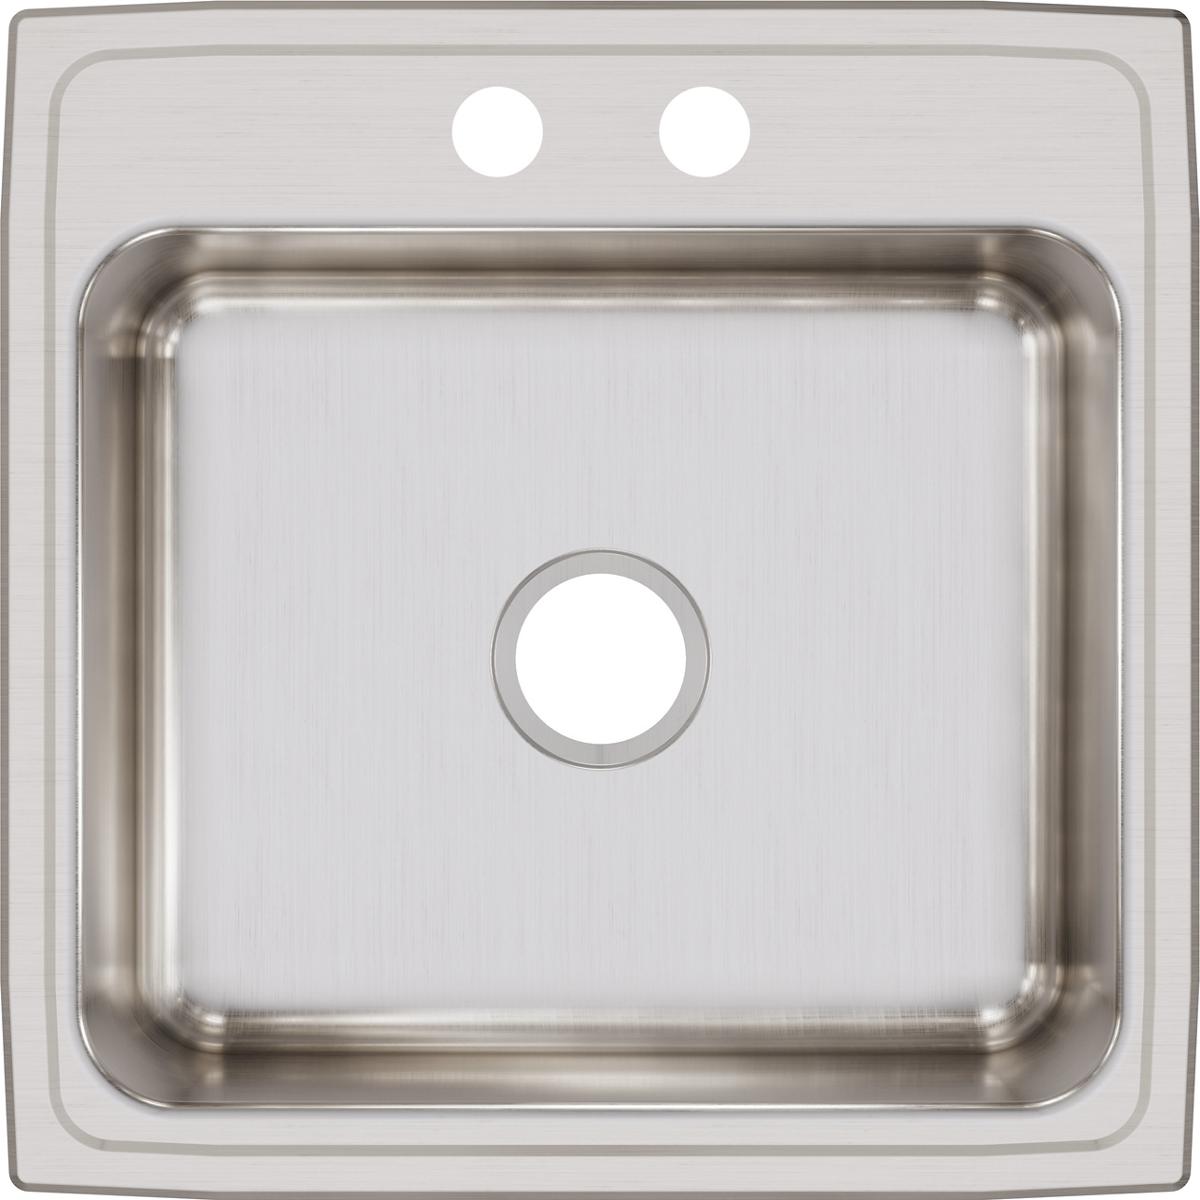 Elkay Lustertone Classic 22" x 22" x 7-5/8" Stainless Steel Single Bowl Drop-in Sink